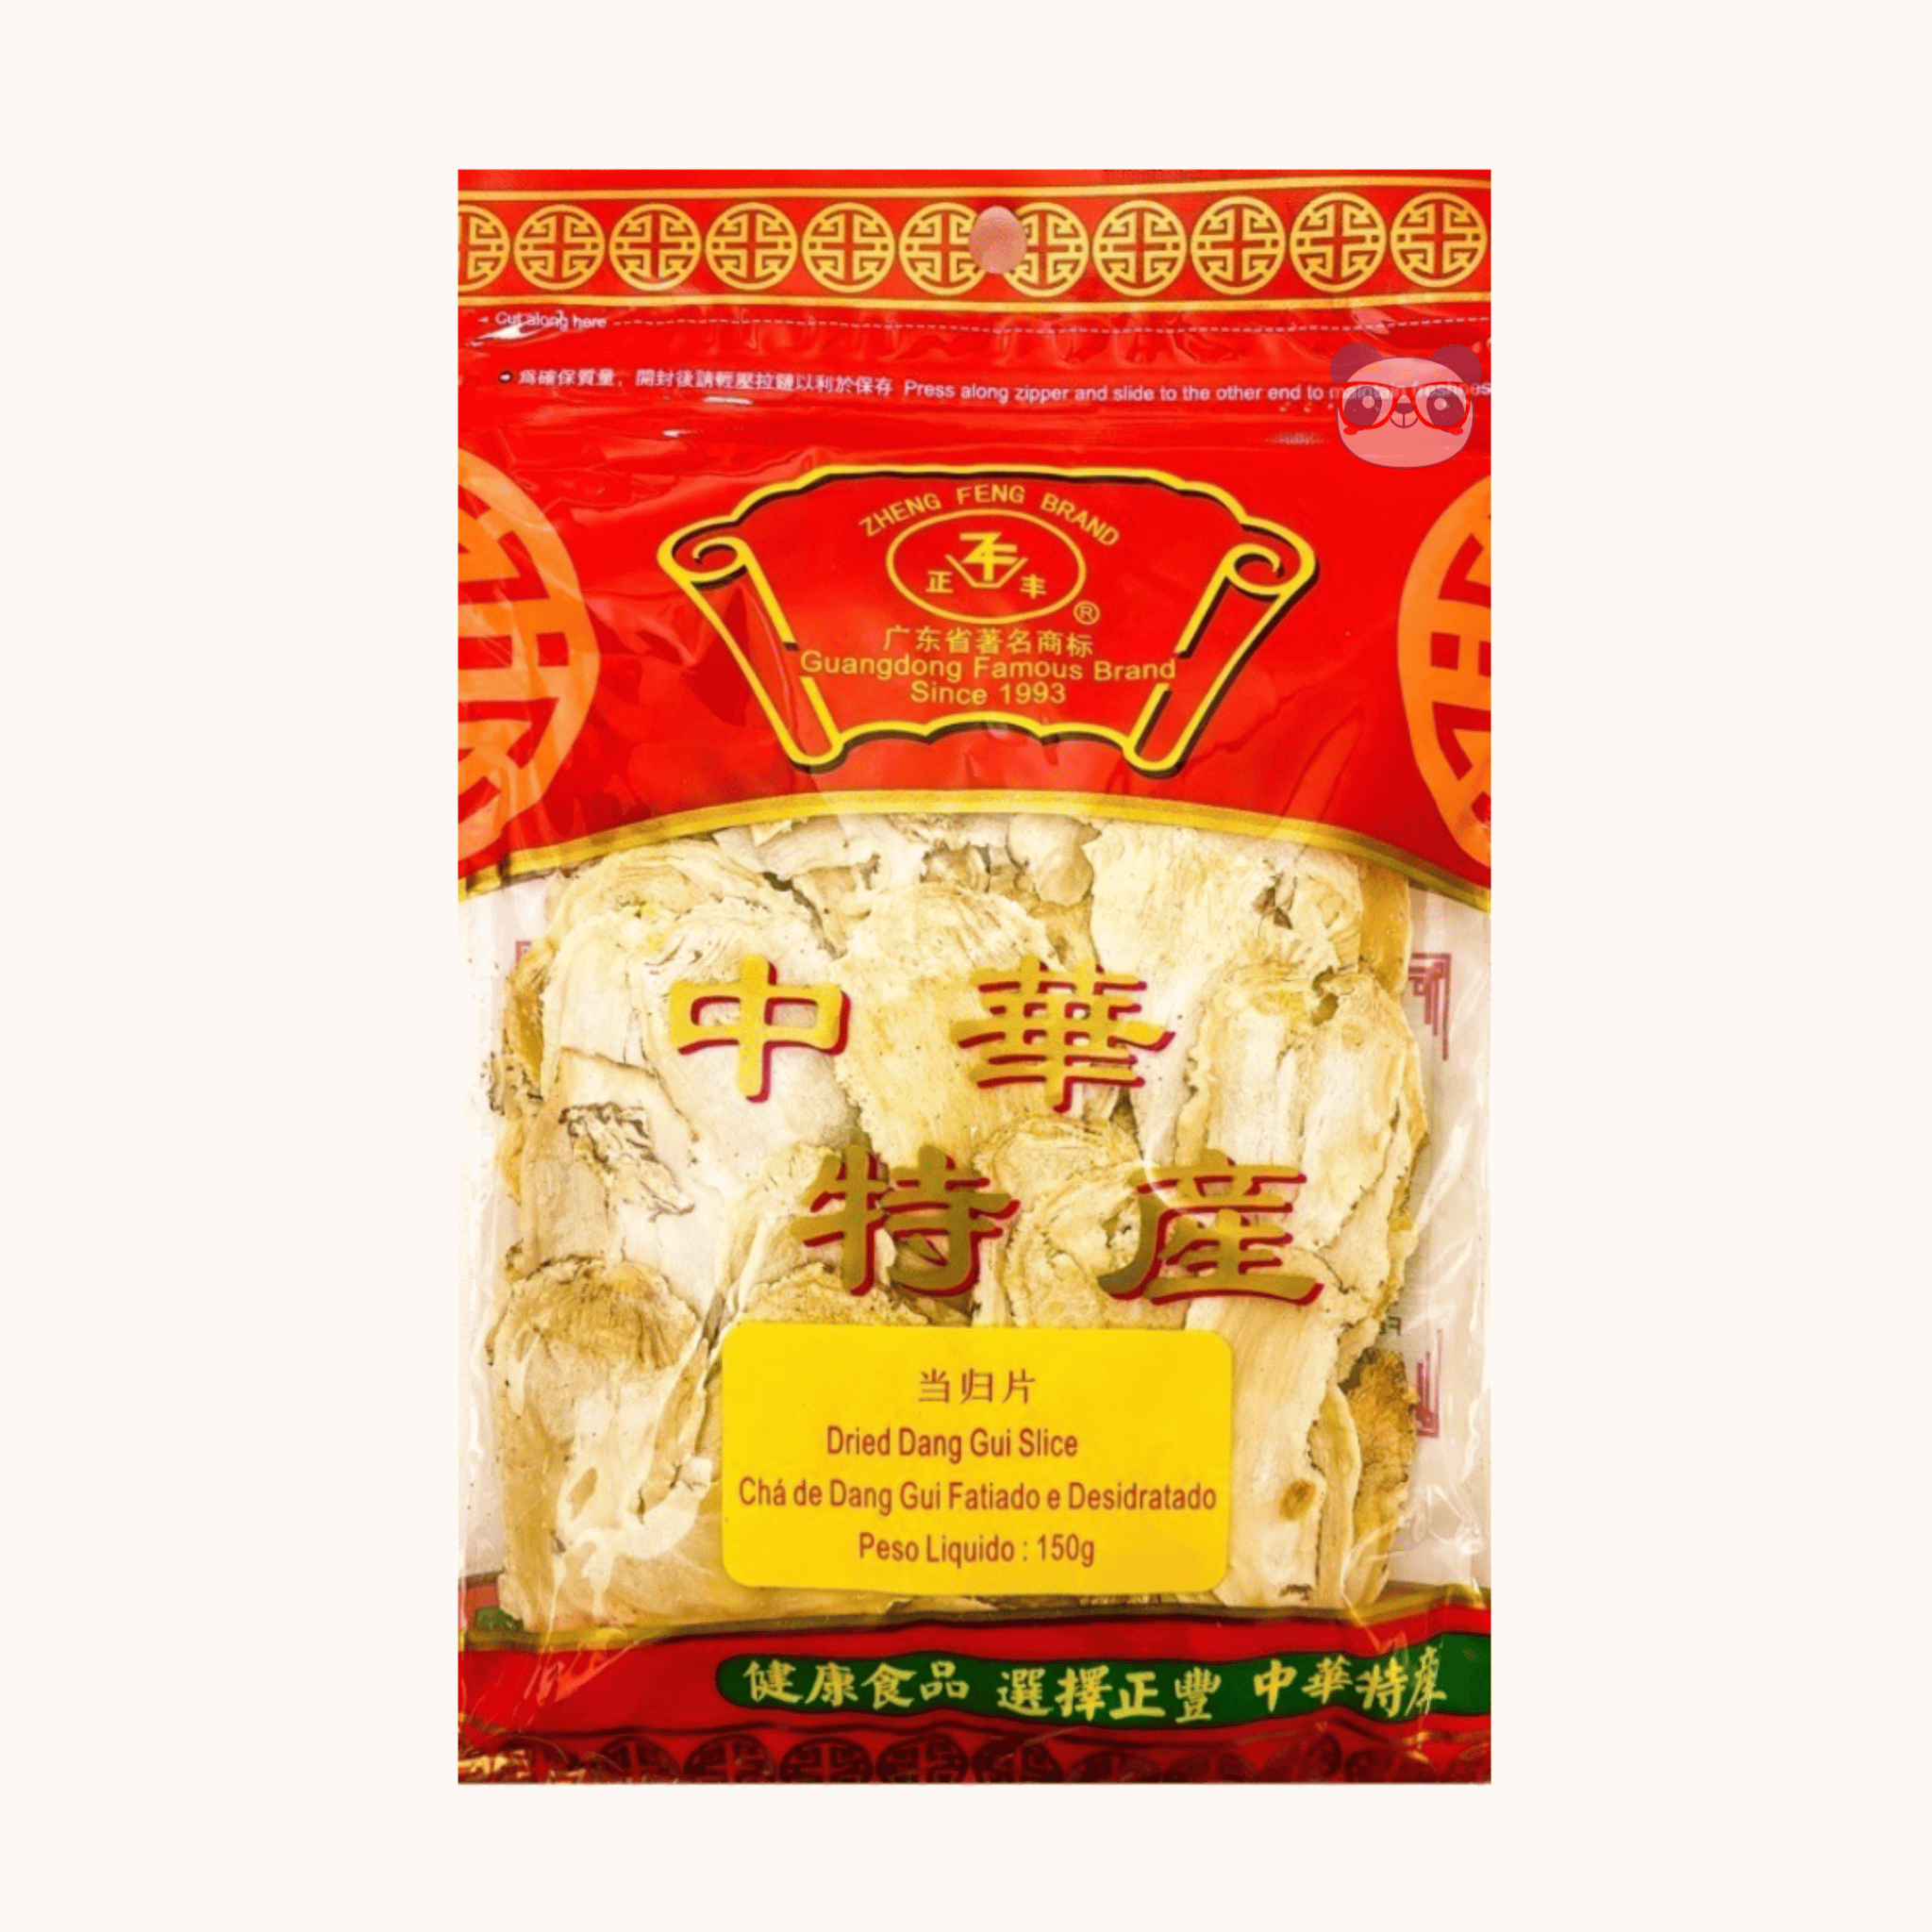 Chá De Dang Gui Fatiado E Desidratado - Zheng Feng Brand - 150g